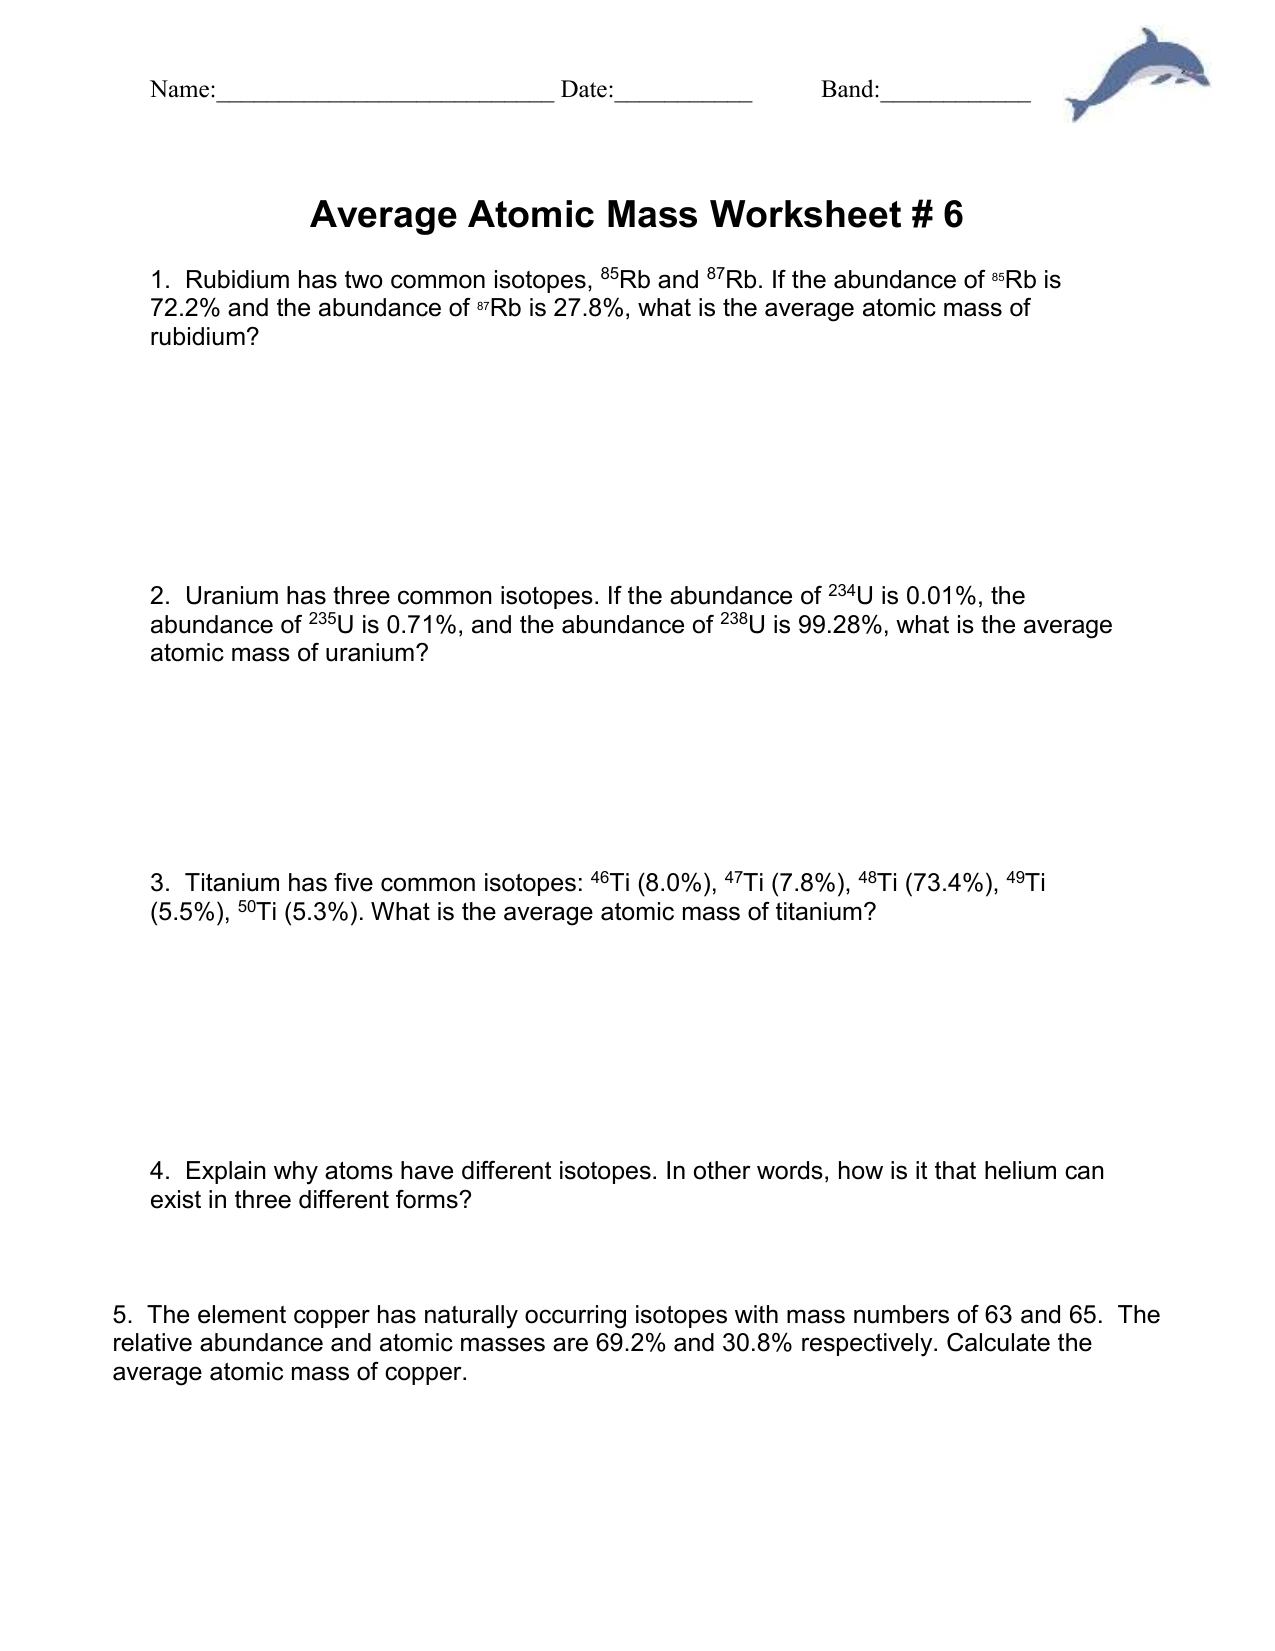 Ch 22 Average atomic mass worksheet Regarding Average Atomic Mass Worksheet